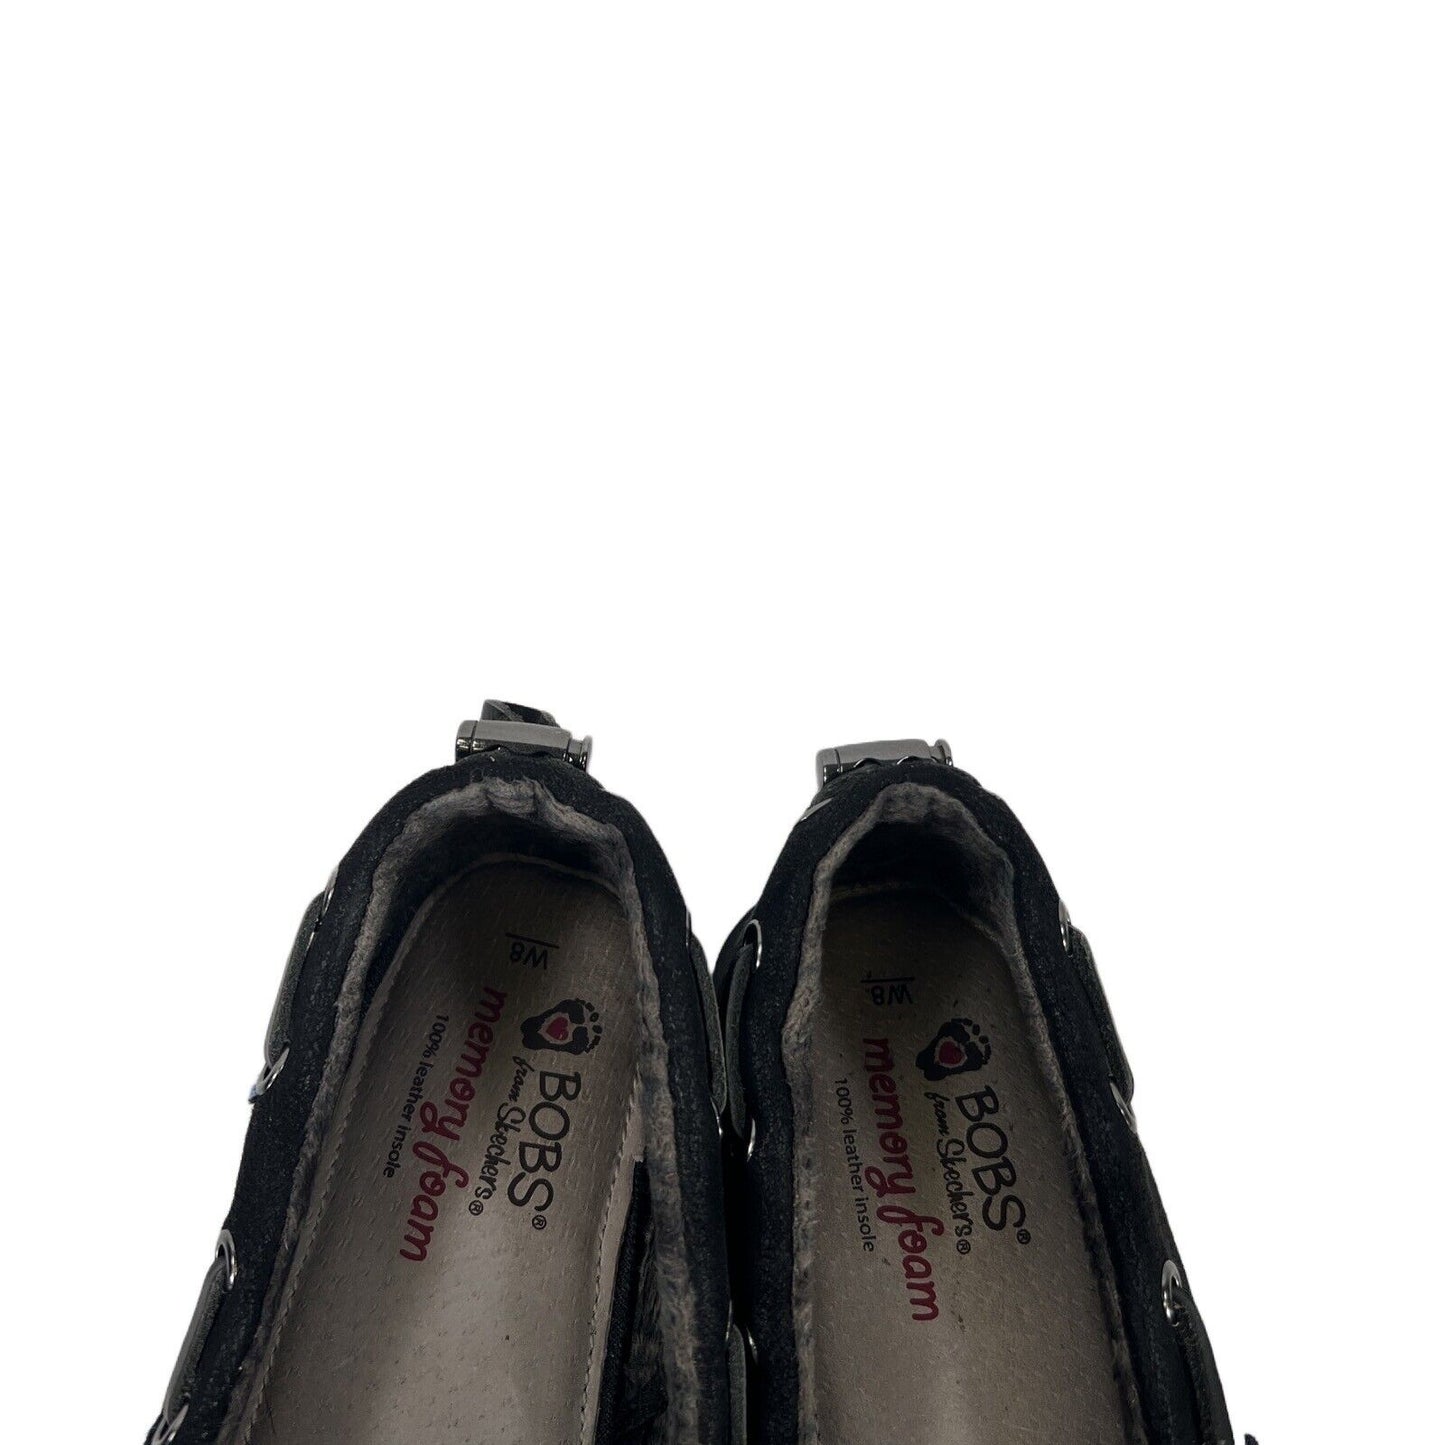 Bobs Skechers Zapatos con forro polar Chill Luxe de tela negra para mujer - 8